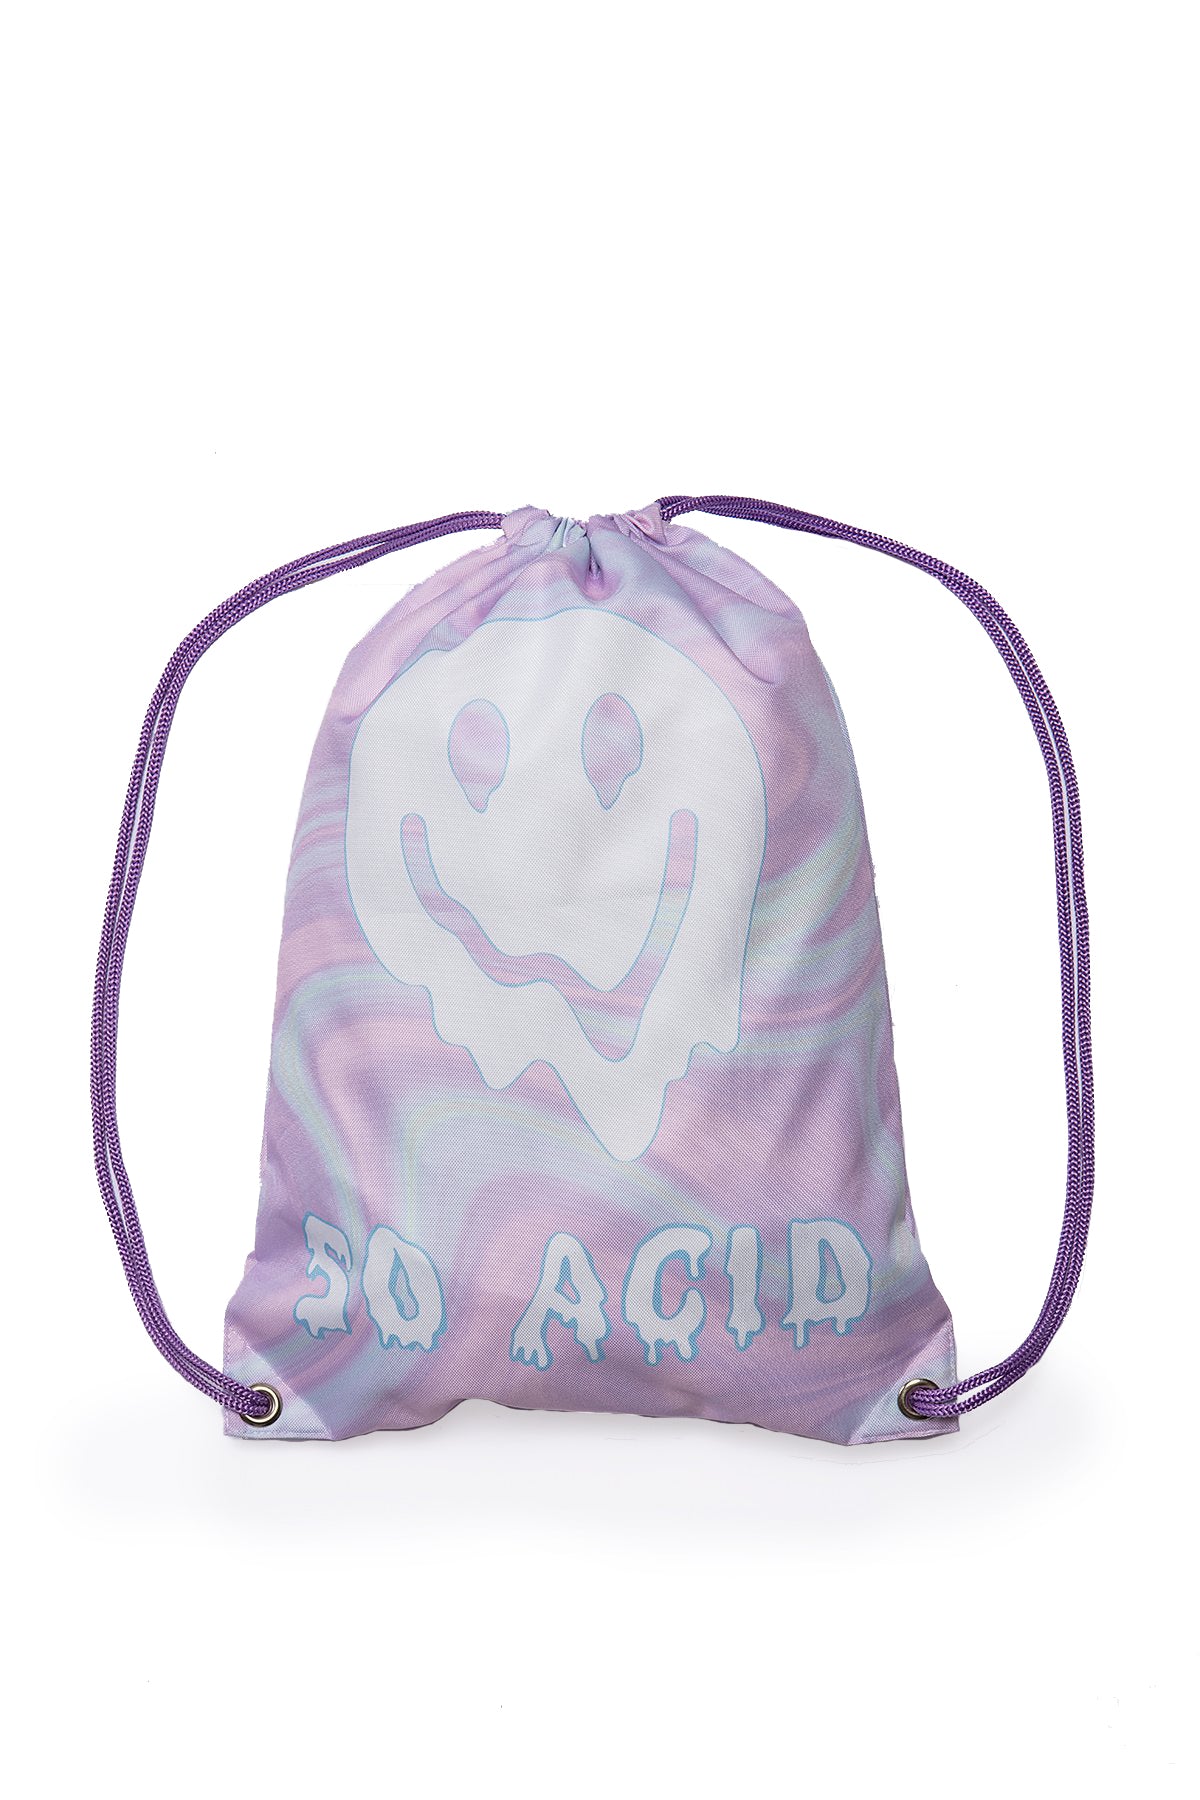 Also Acid-Rucksäcke